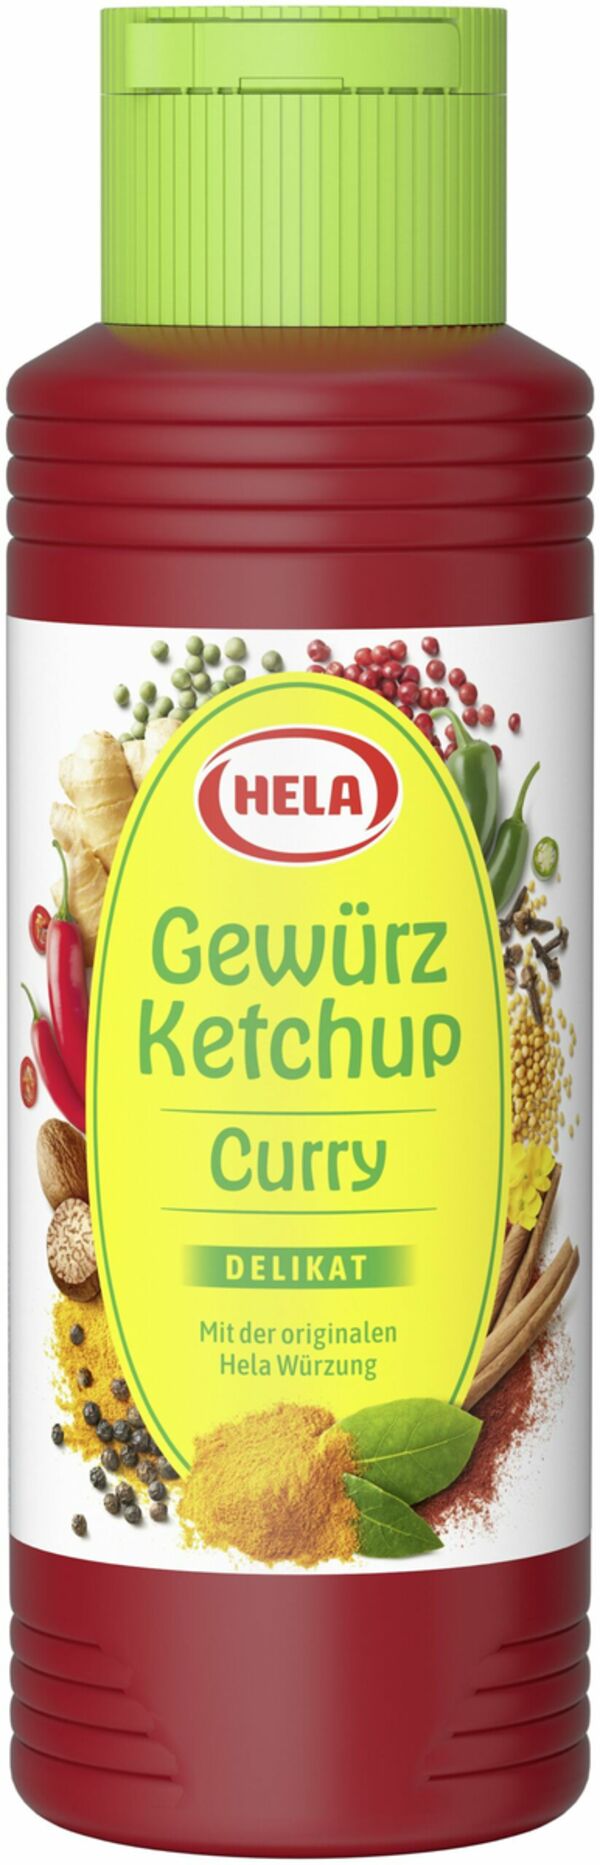 Bild 1 von HELA Curry Gewürz Ketchup 300 ml